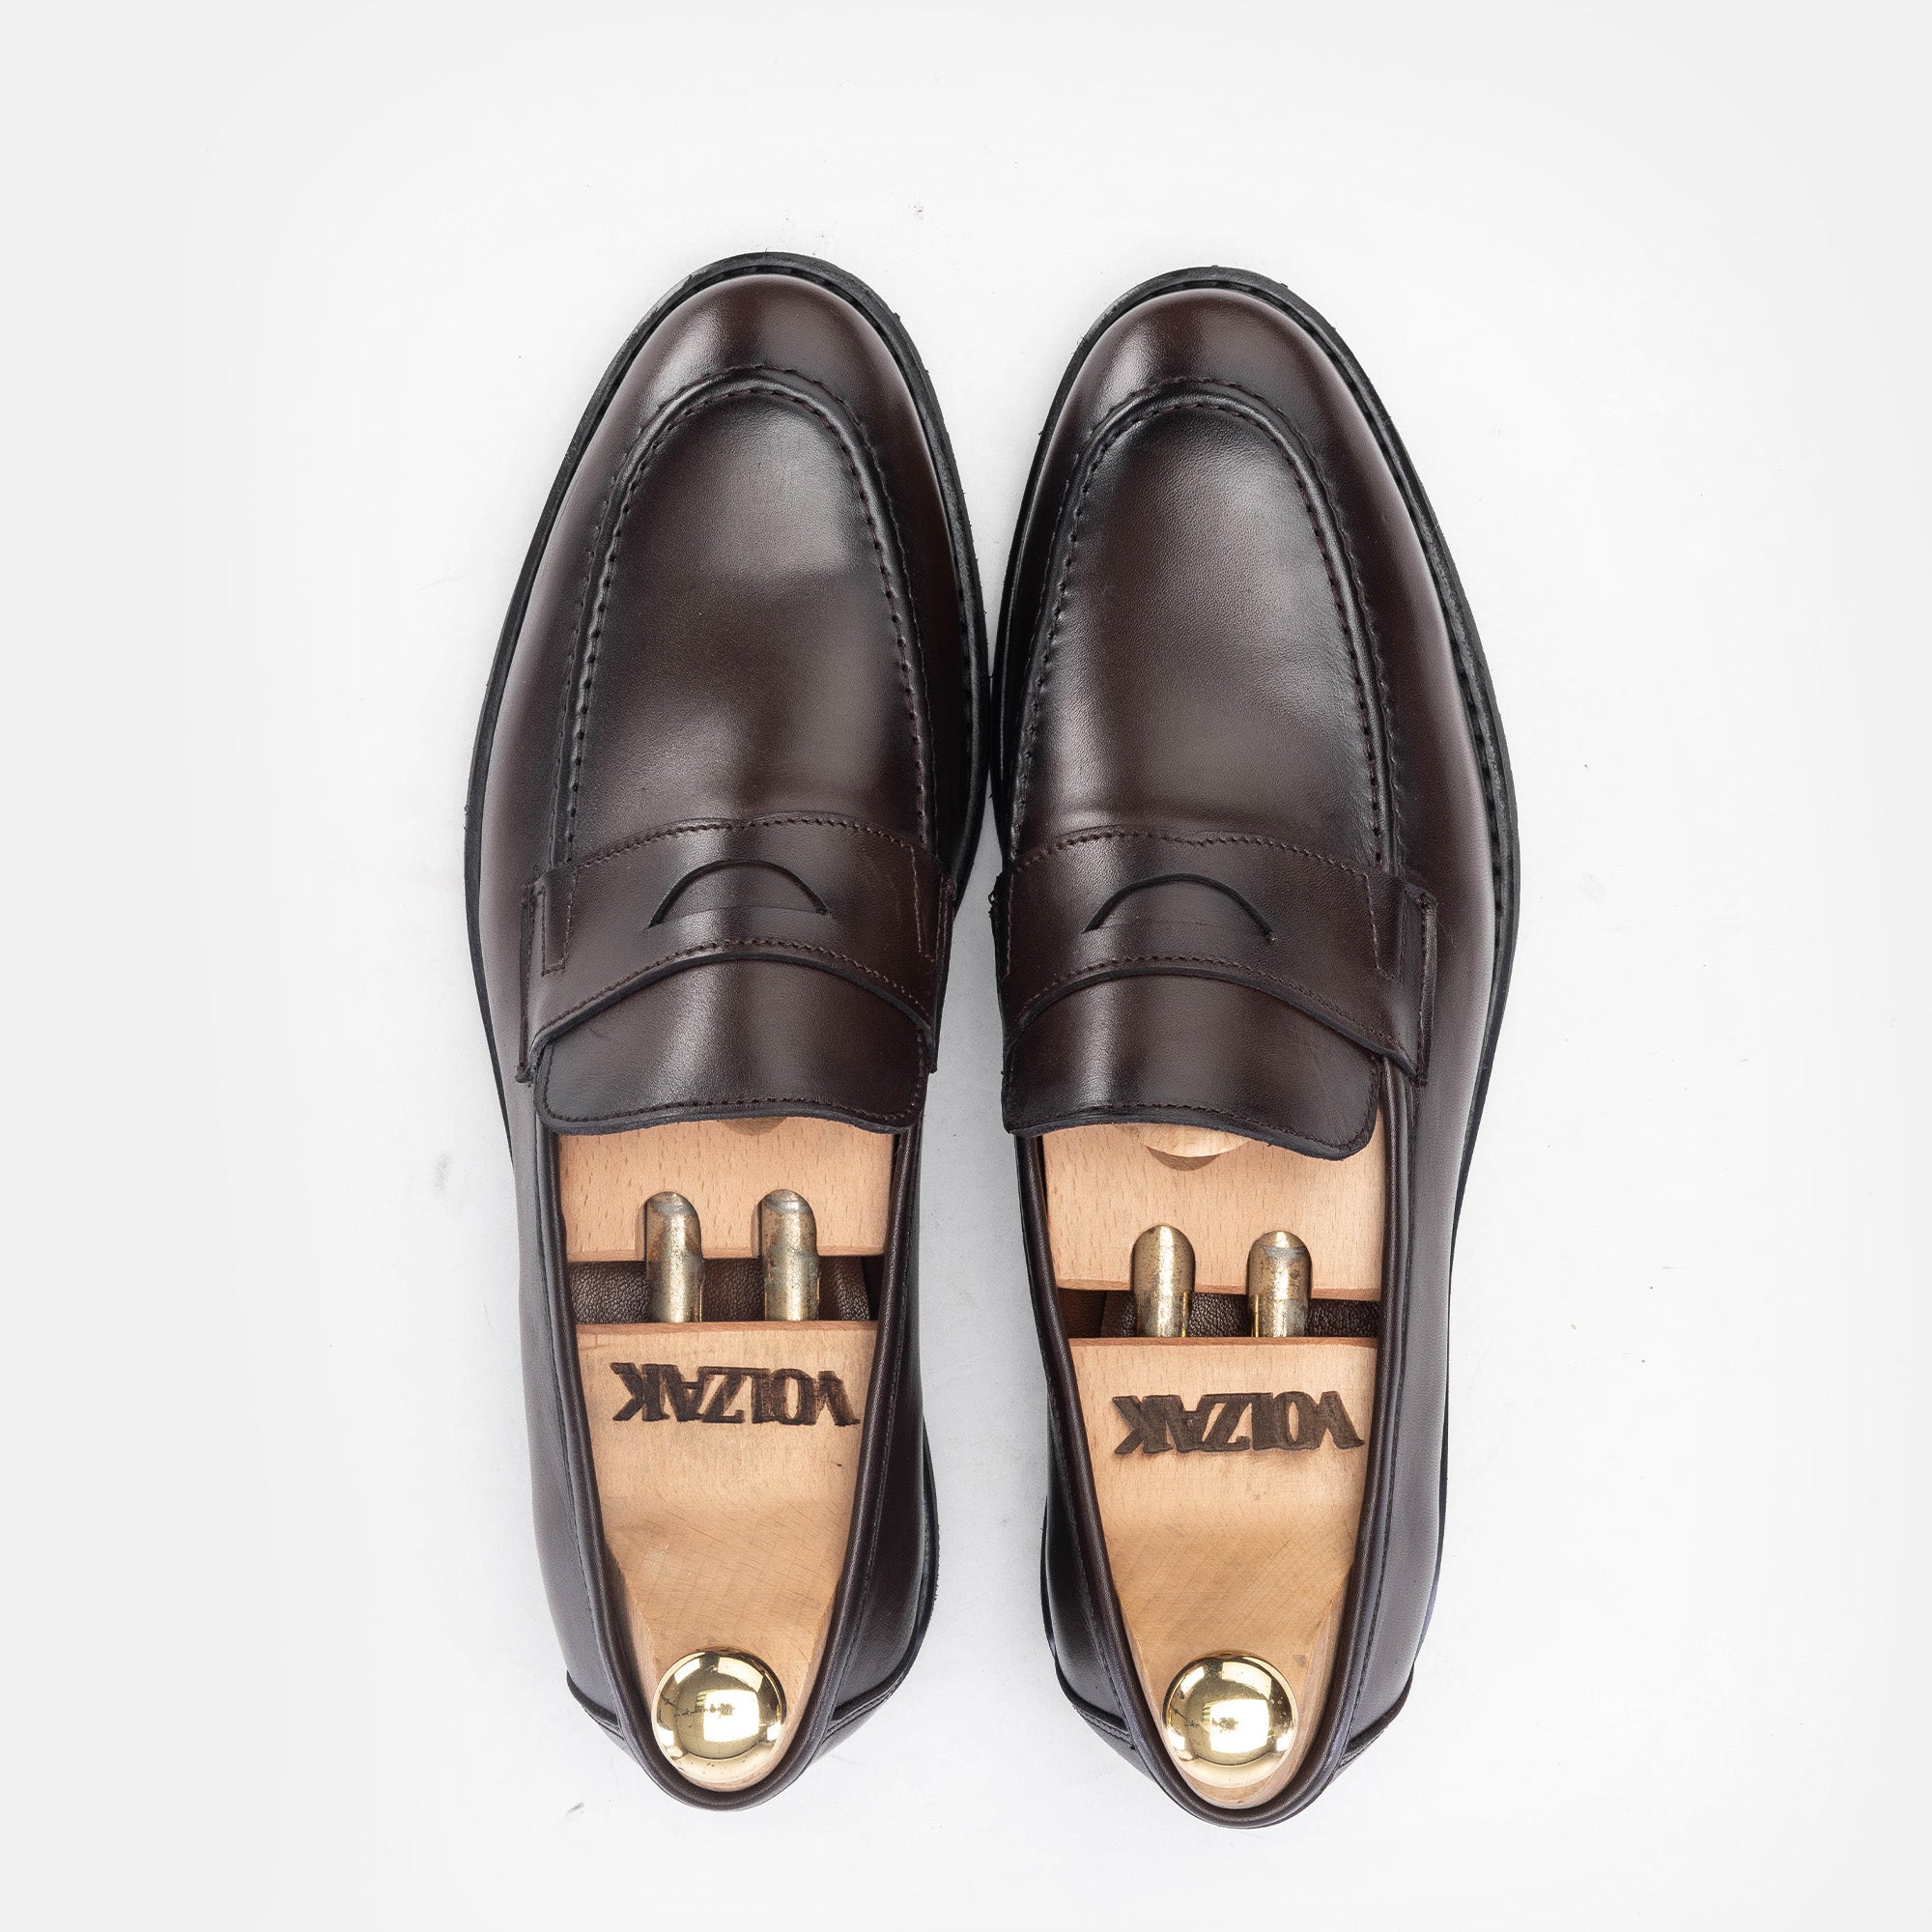 '5158 chaussure cuir marron